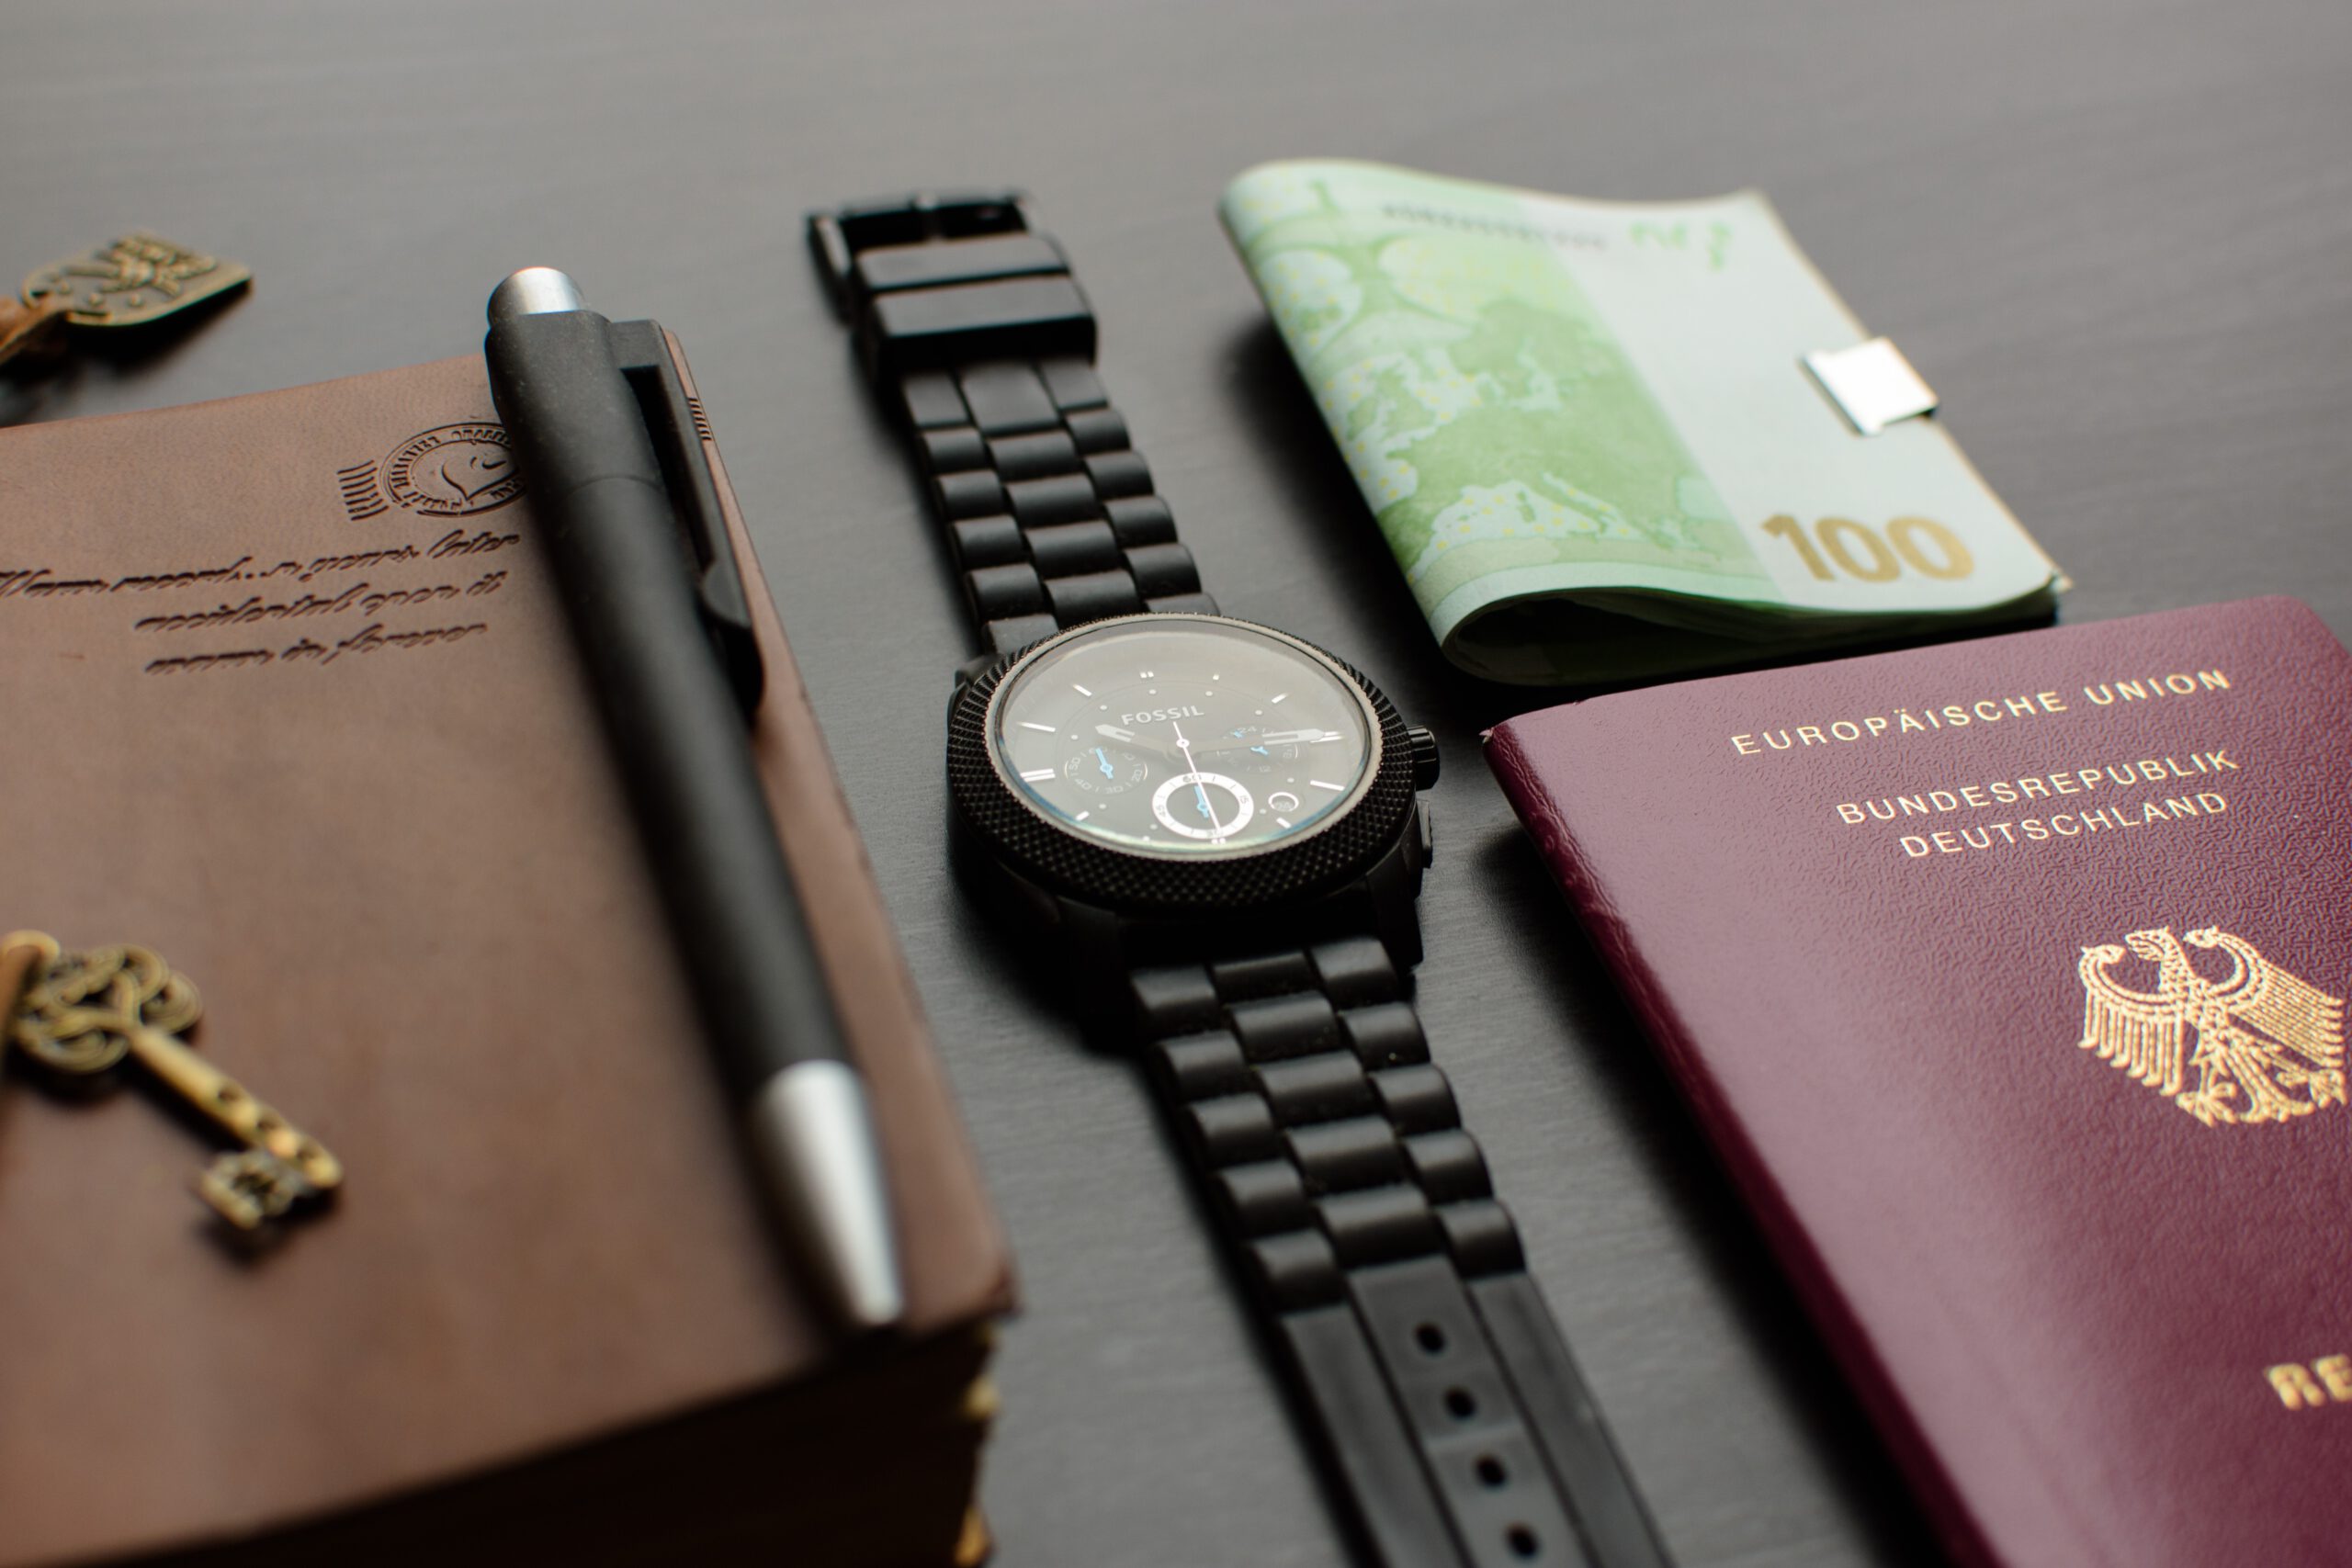 Paszport, zegarek na pasku i dokuemnty leżące na stole